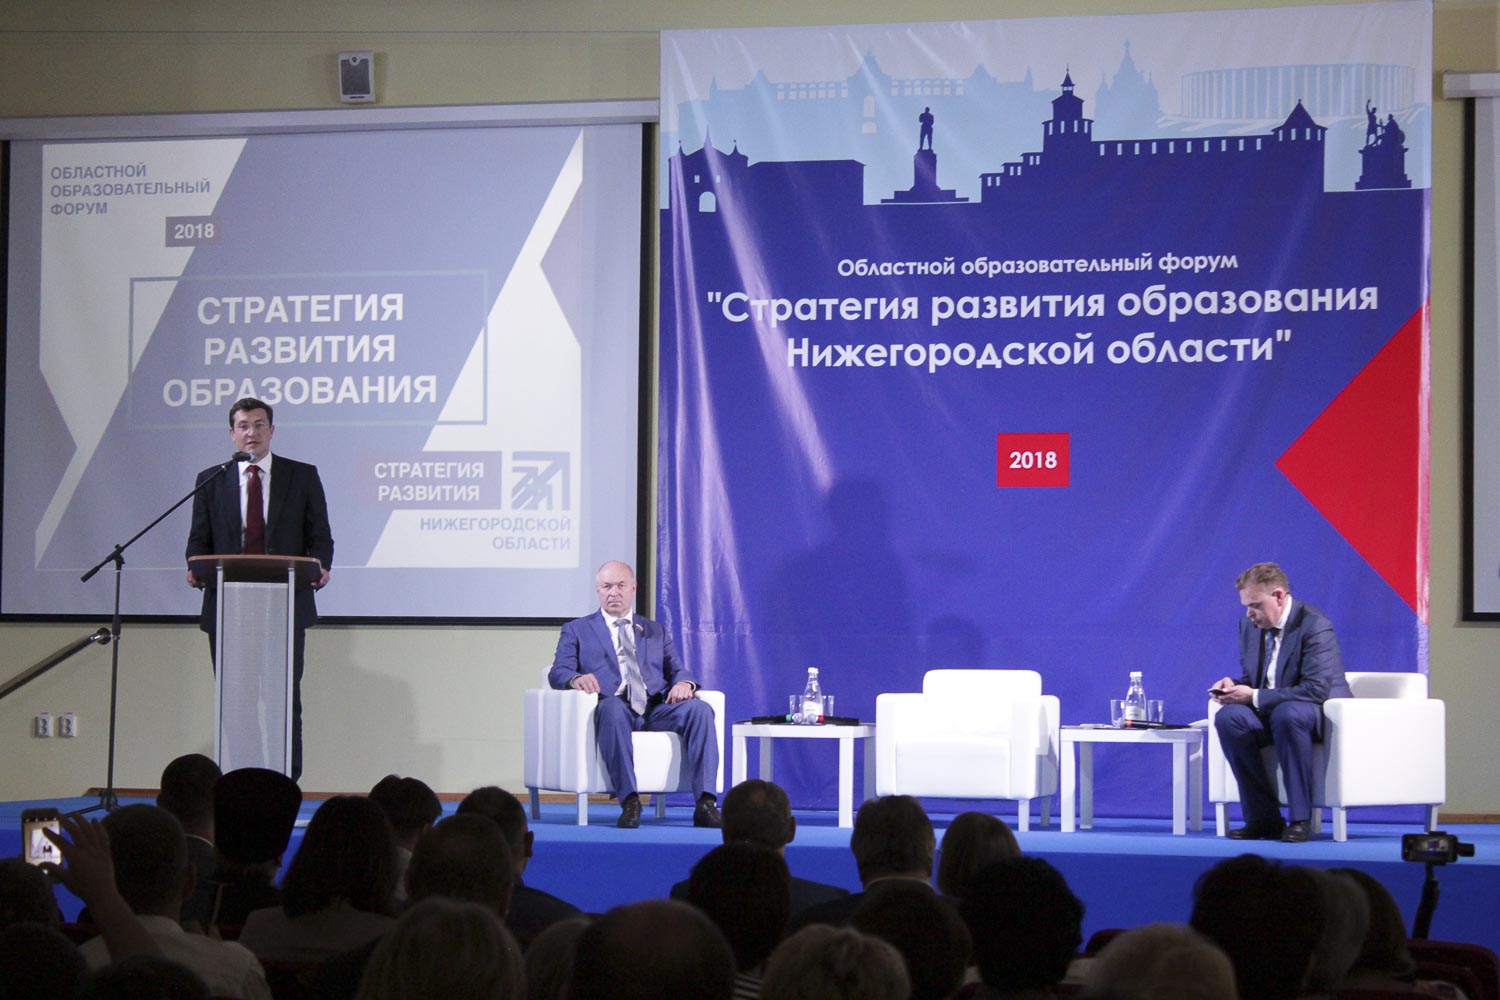 Мининский университ представил новый проект на Областном образовательном  форуме «Стратегия развития образования Нижегородской области»